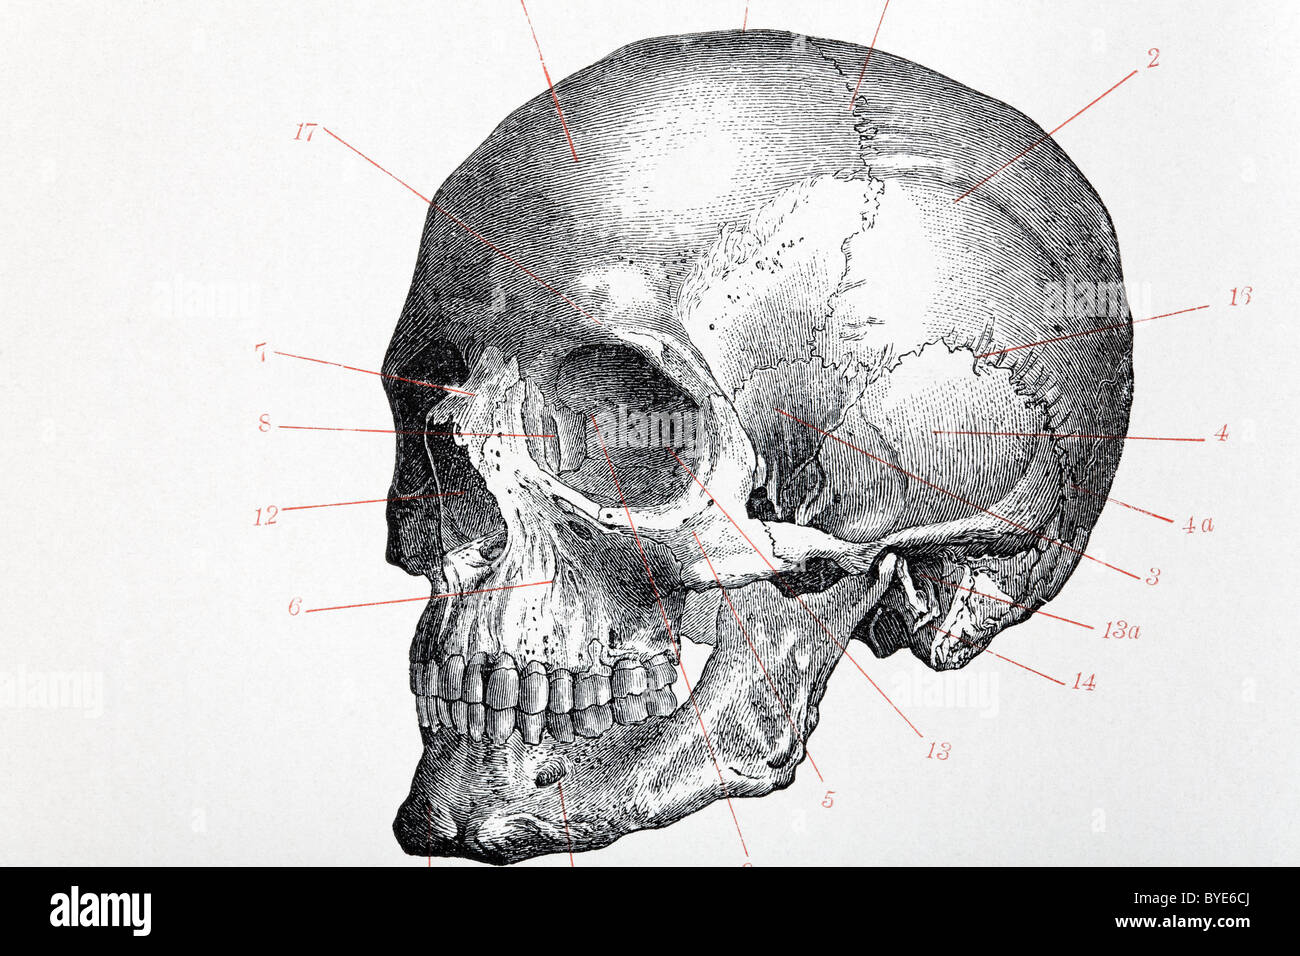 Cranio umano con i numeri di indice, libro storico illustrazione, acciaio incisione, Brockhaus Konversationslexikon Foto Stock